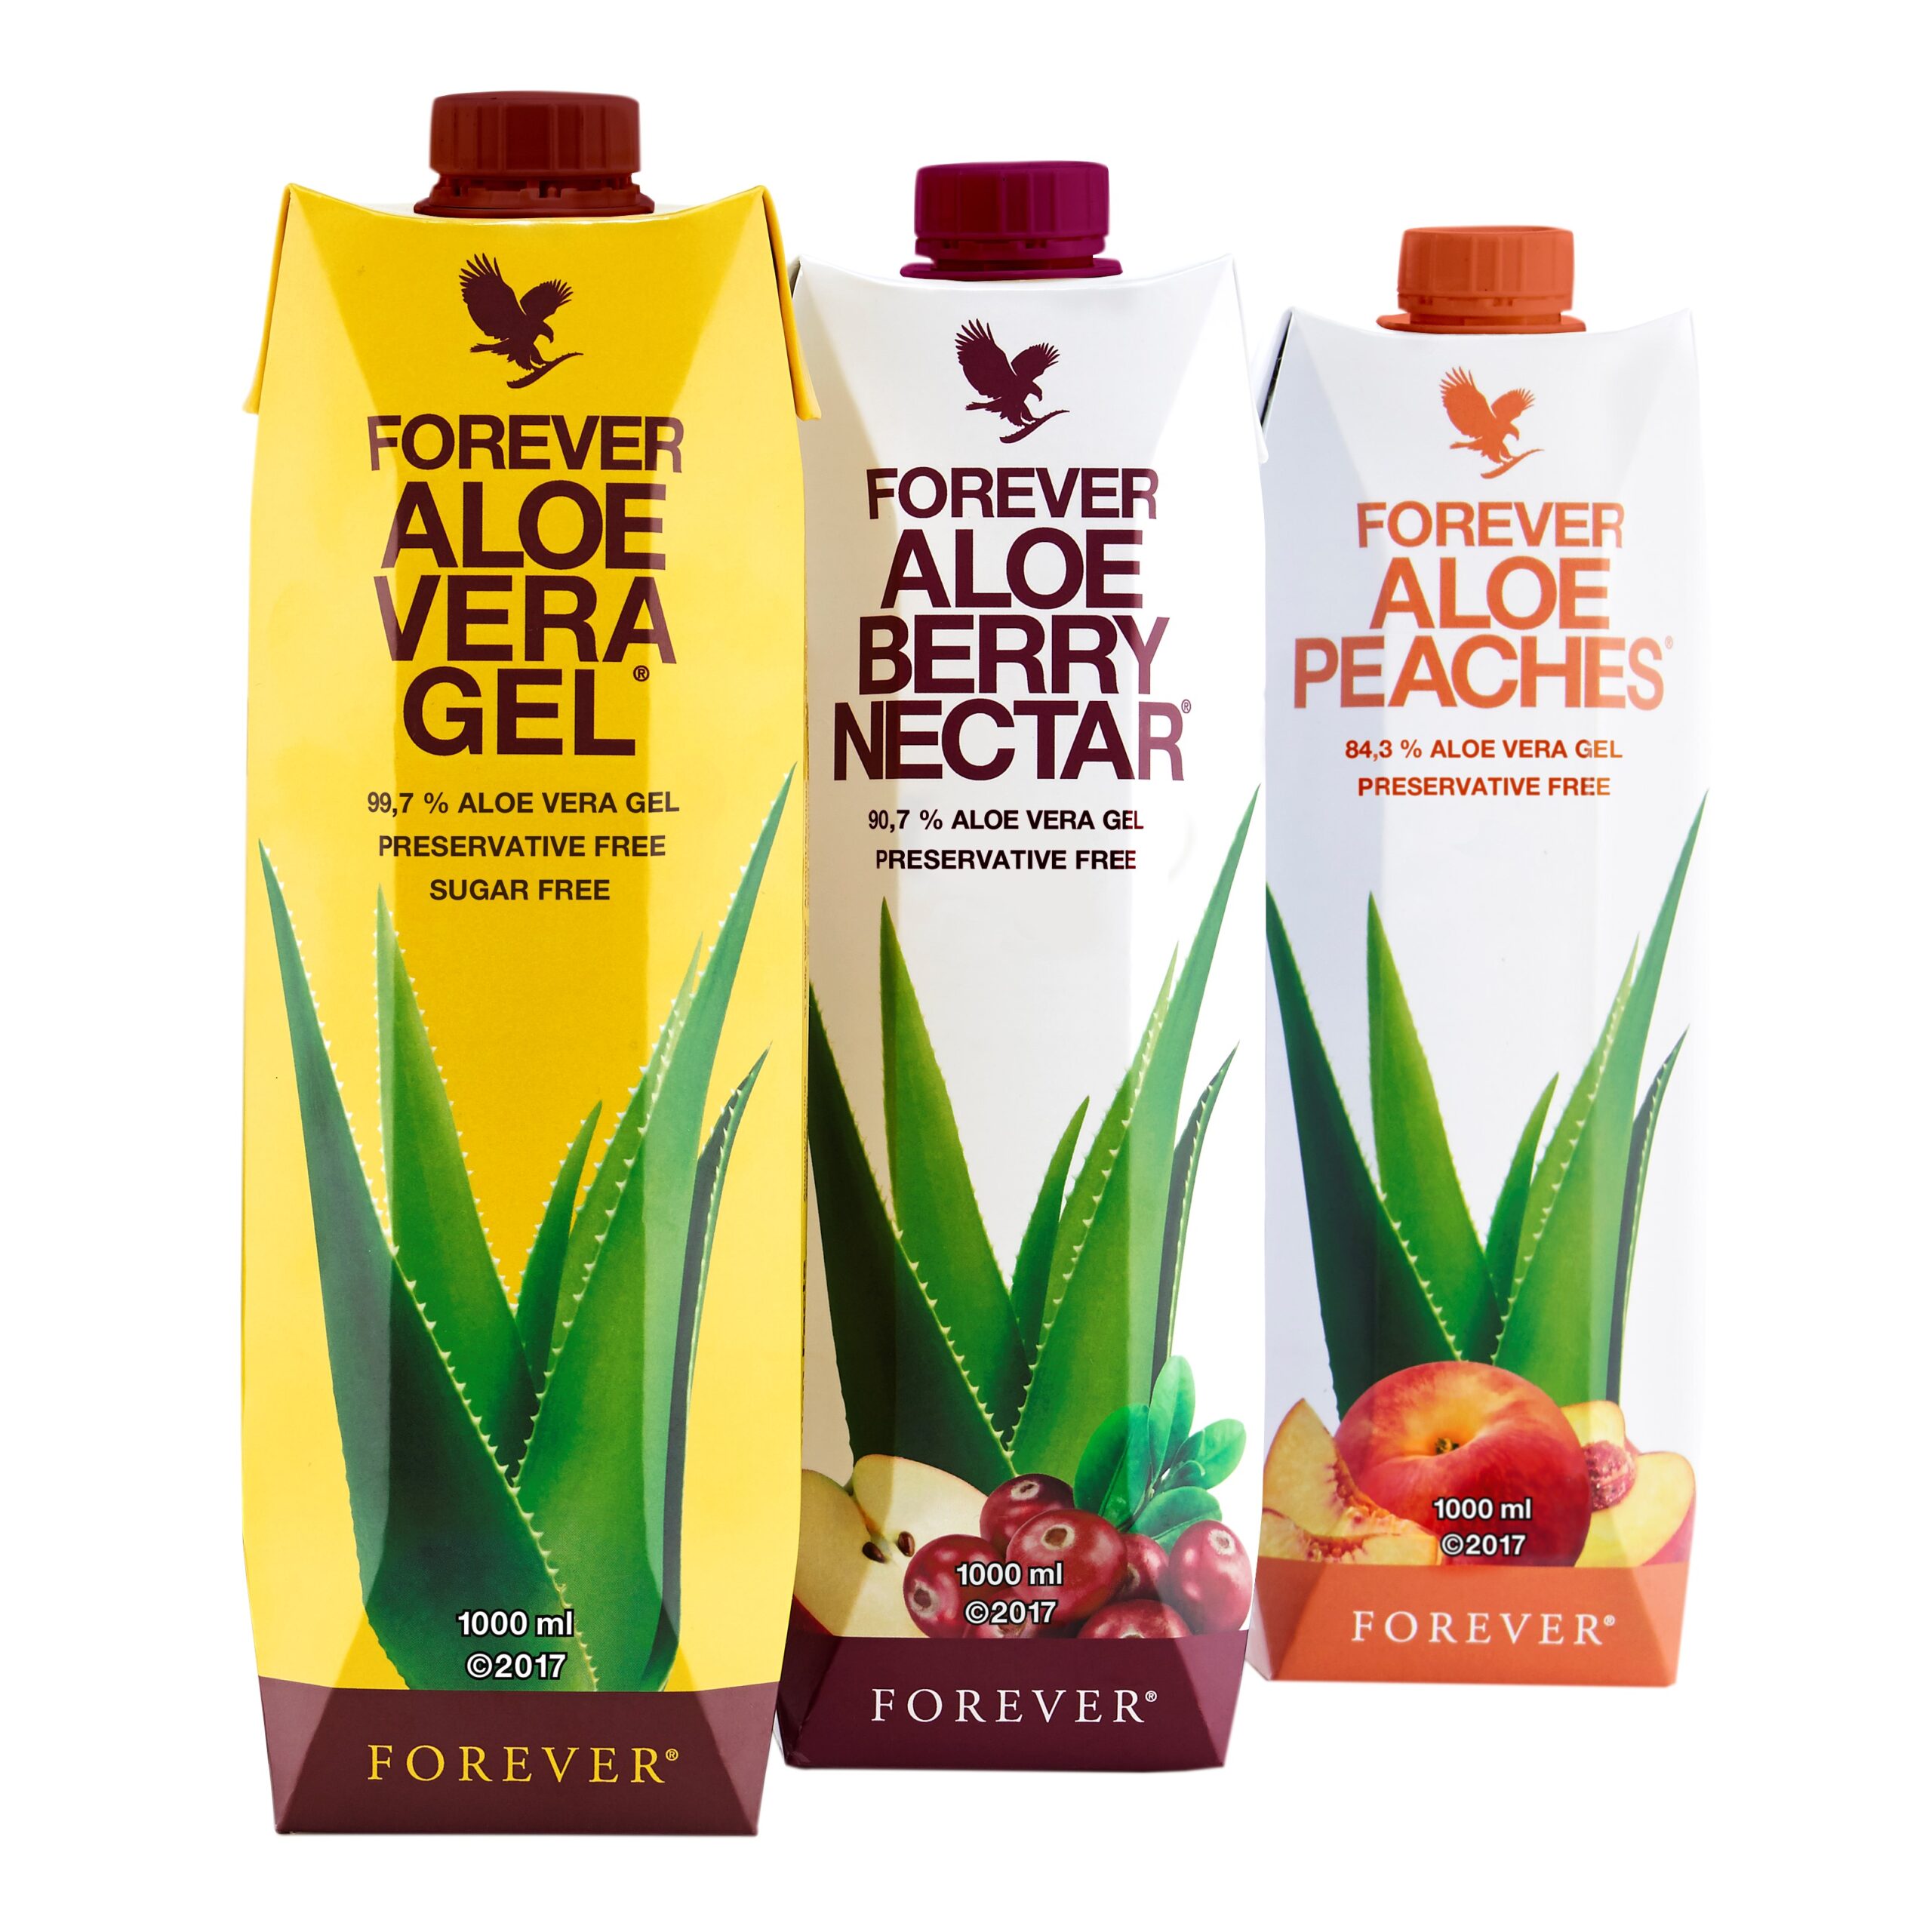 Aloe Vera Drikke Gel fra Forever fås i 3 varianter.